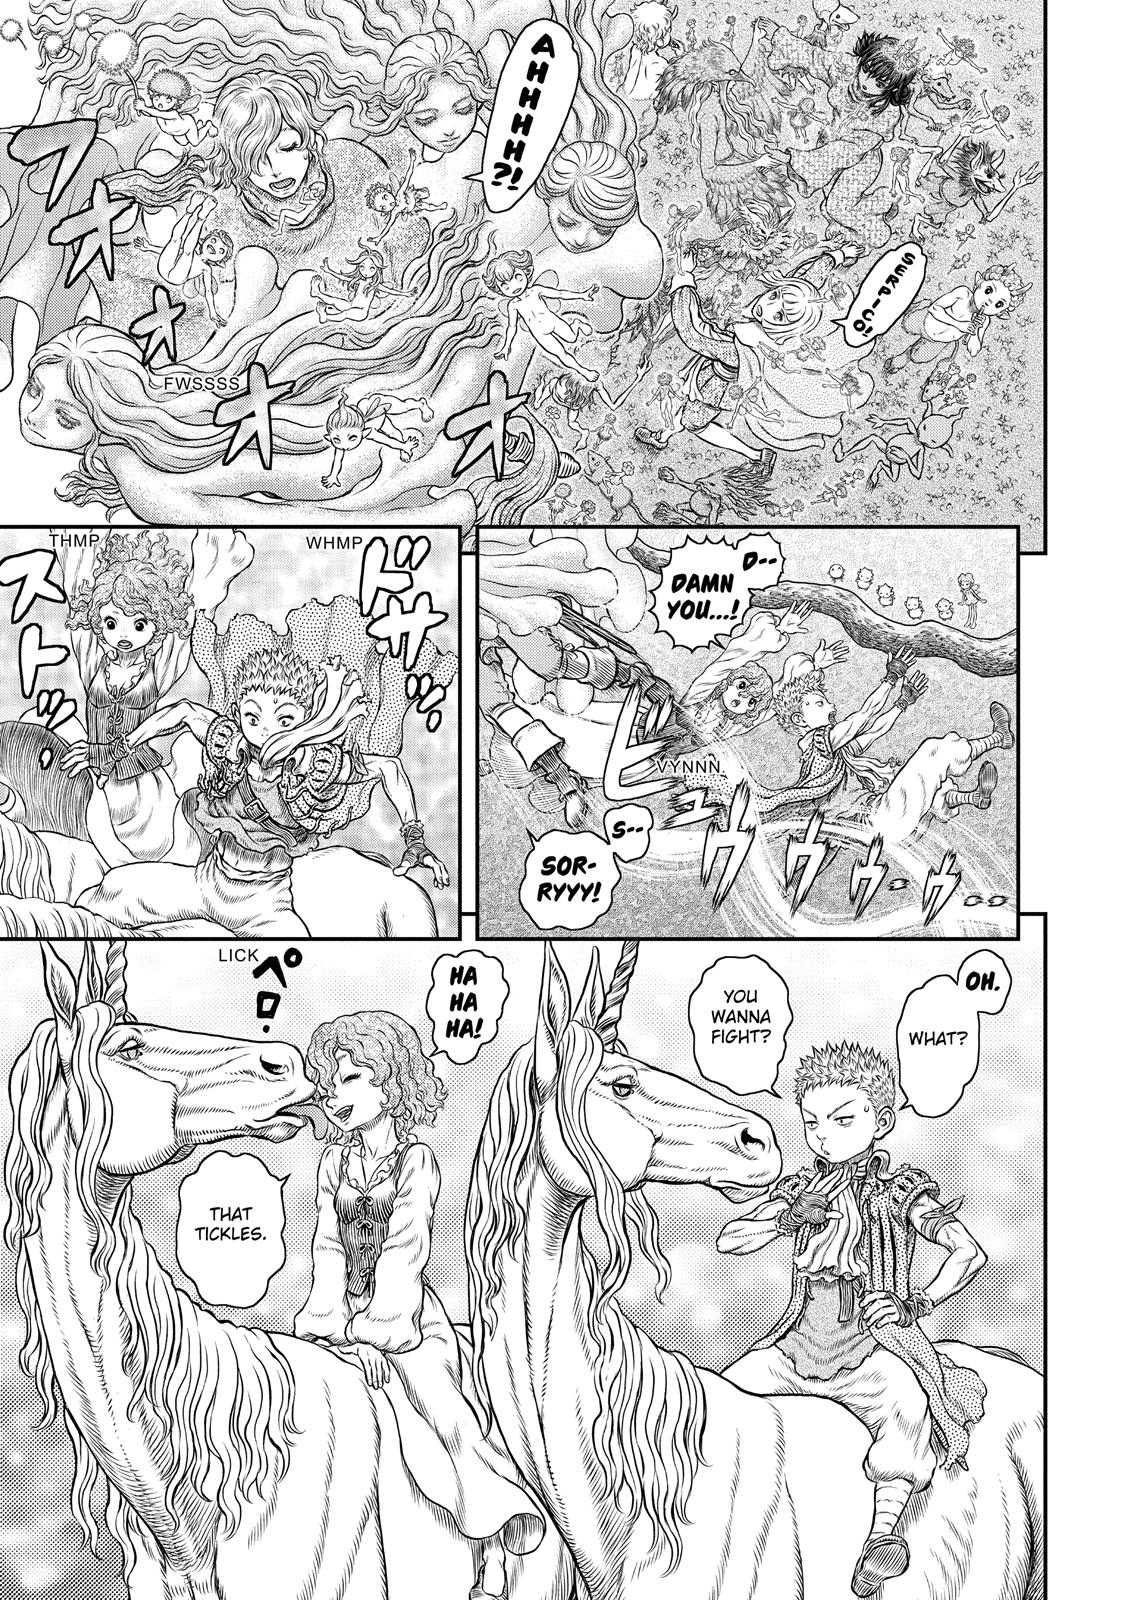 Berserk Manga Chapter 346 image 07